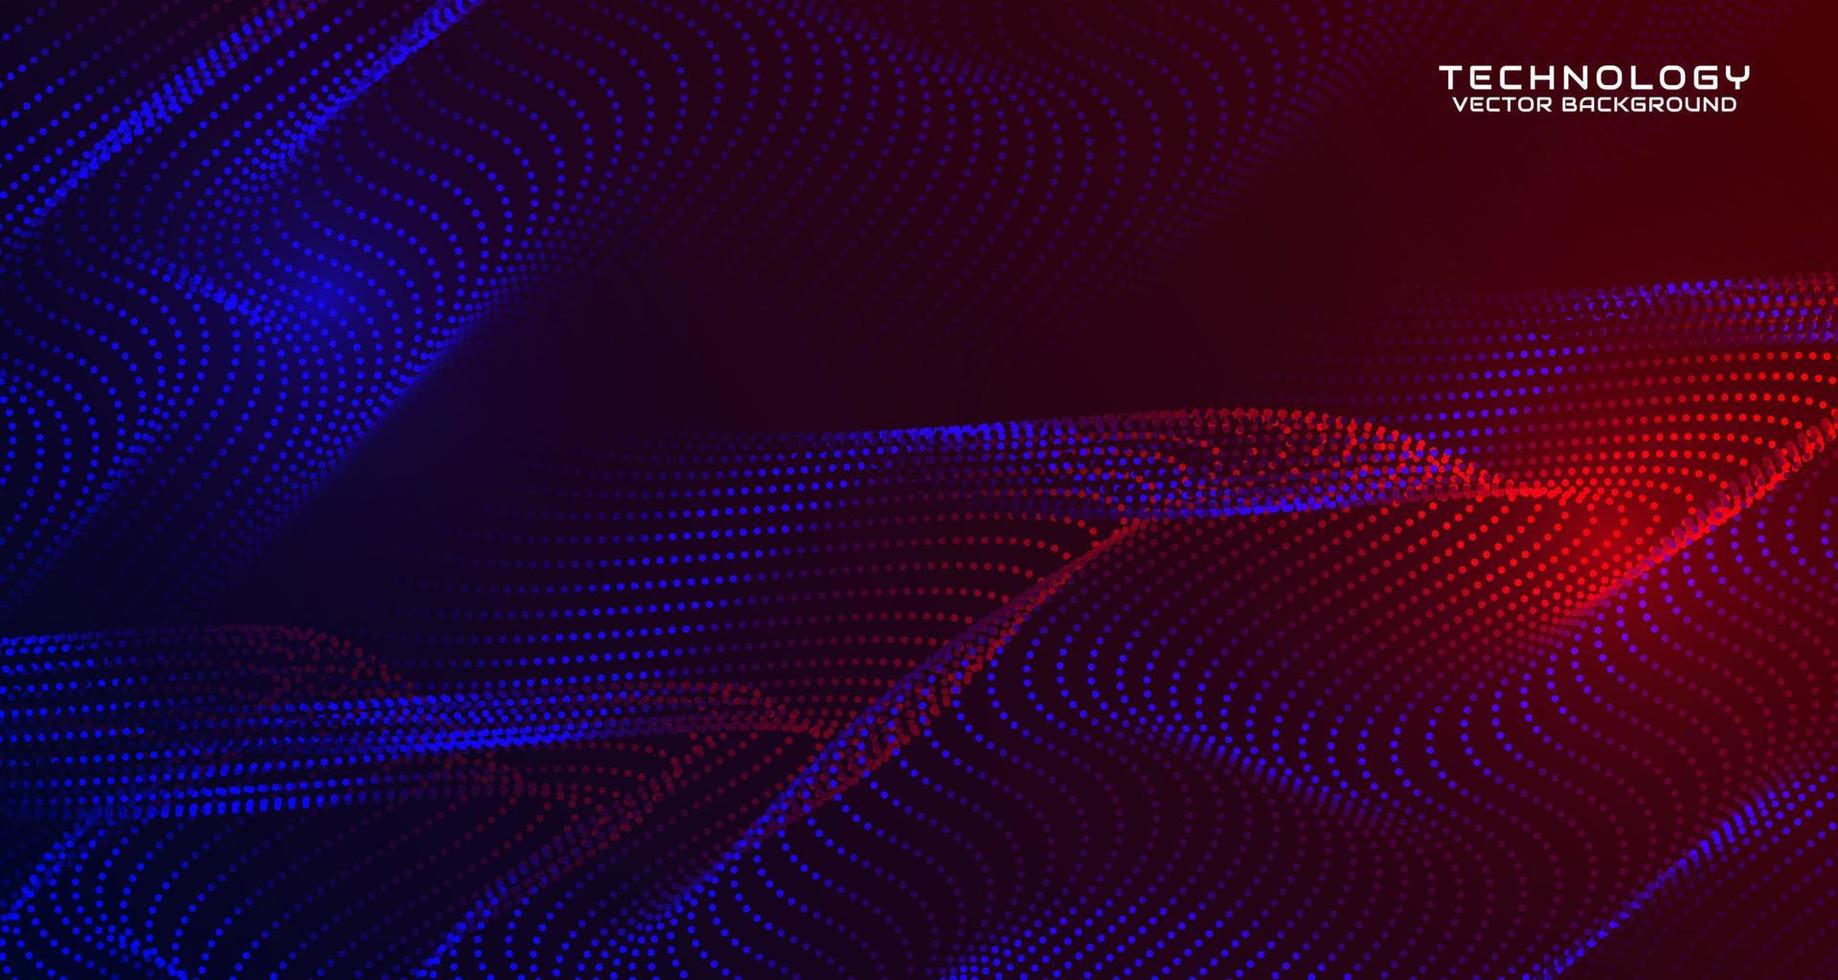 blauer techno abstrakter hintergrund auf dunklem raum mit winkendem partikelstileffekt. Grafikdesign-Element mit 3D-Moving-Dots-Flow-Konzept für Banner, Flyer, Karten, Broschüren-Cover oder Landing-Page vektor